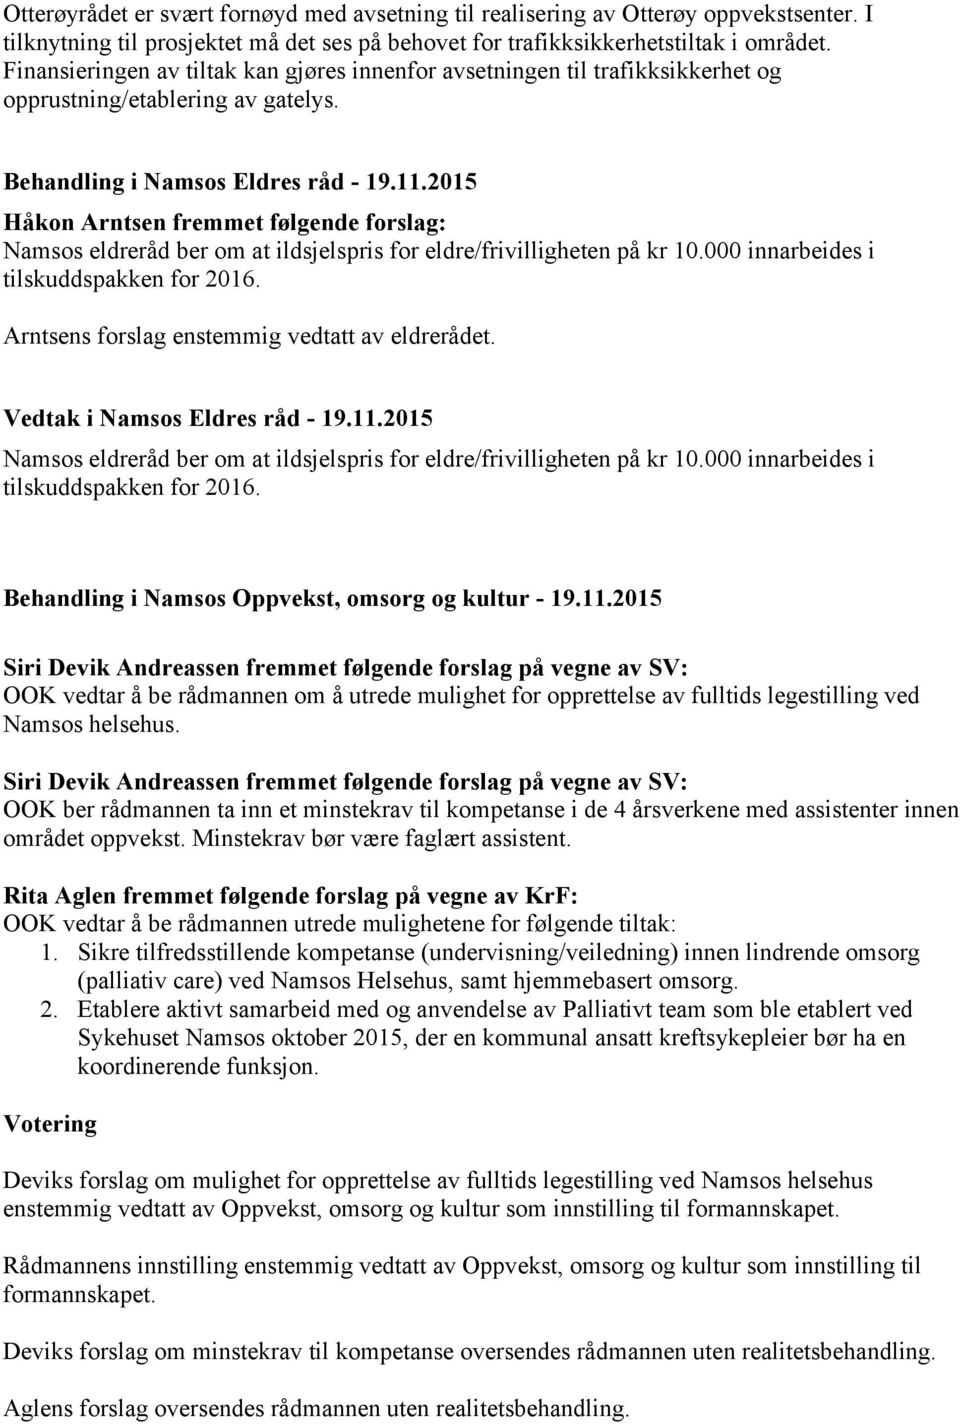 2015 Håkon Arntsen fremmet følgende forslag: Namsos eldreråd ber om at ildsjelspris for eldre/frivilligheten på kr 10.000 innarbeides i tilskuddspakken for 2016.